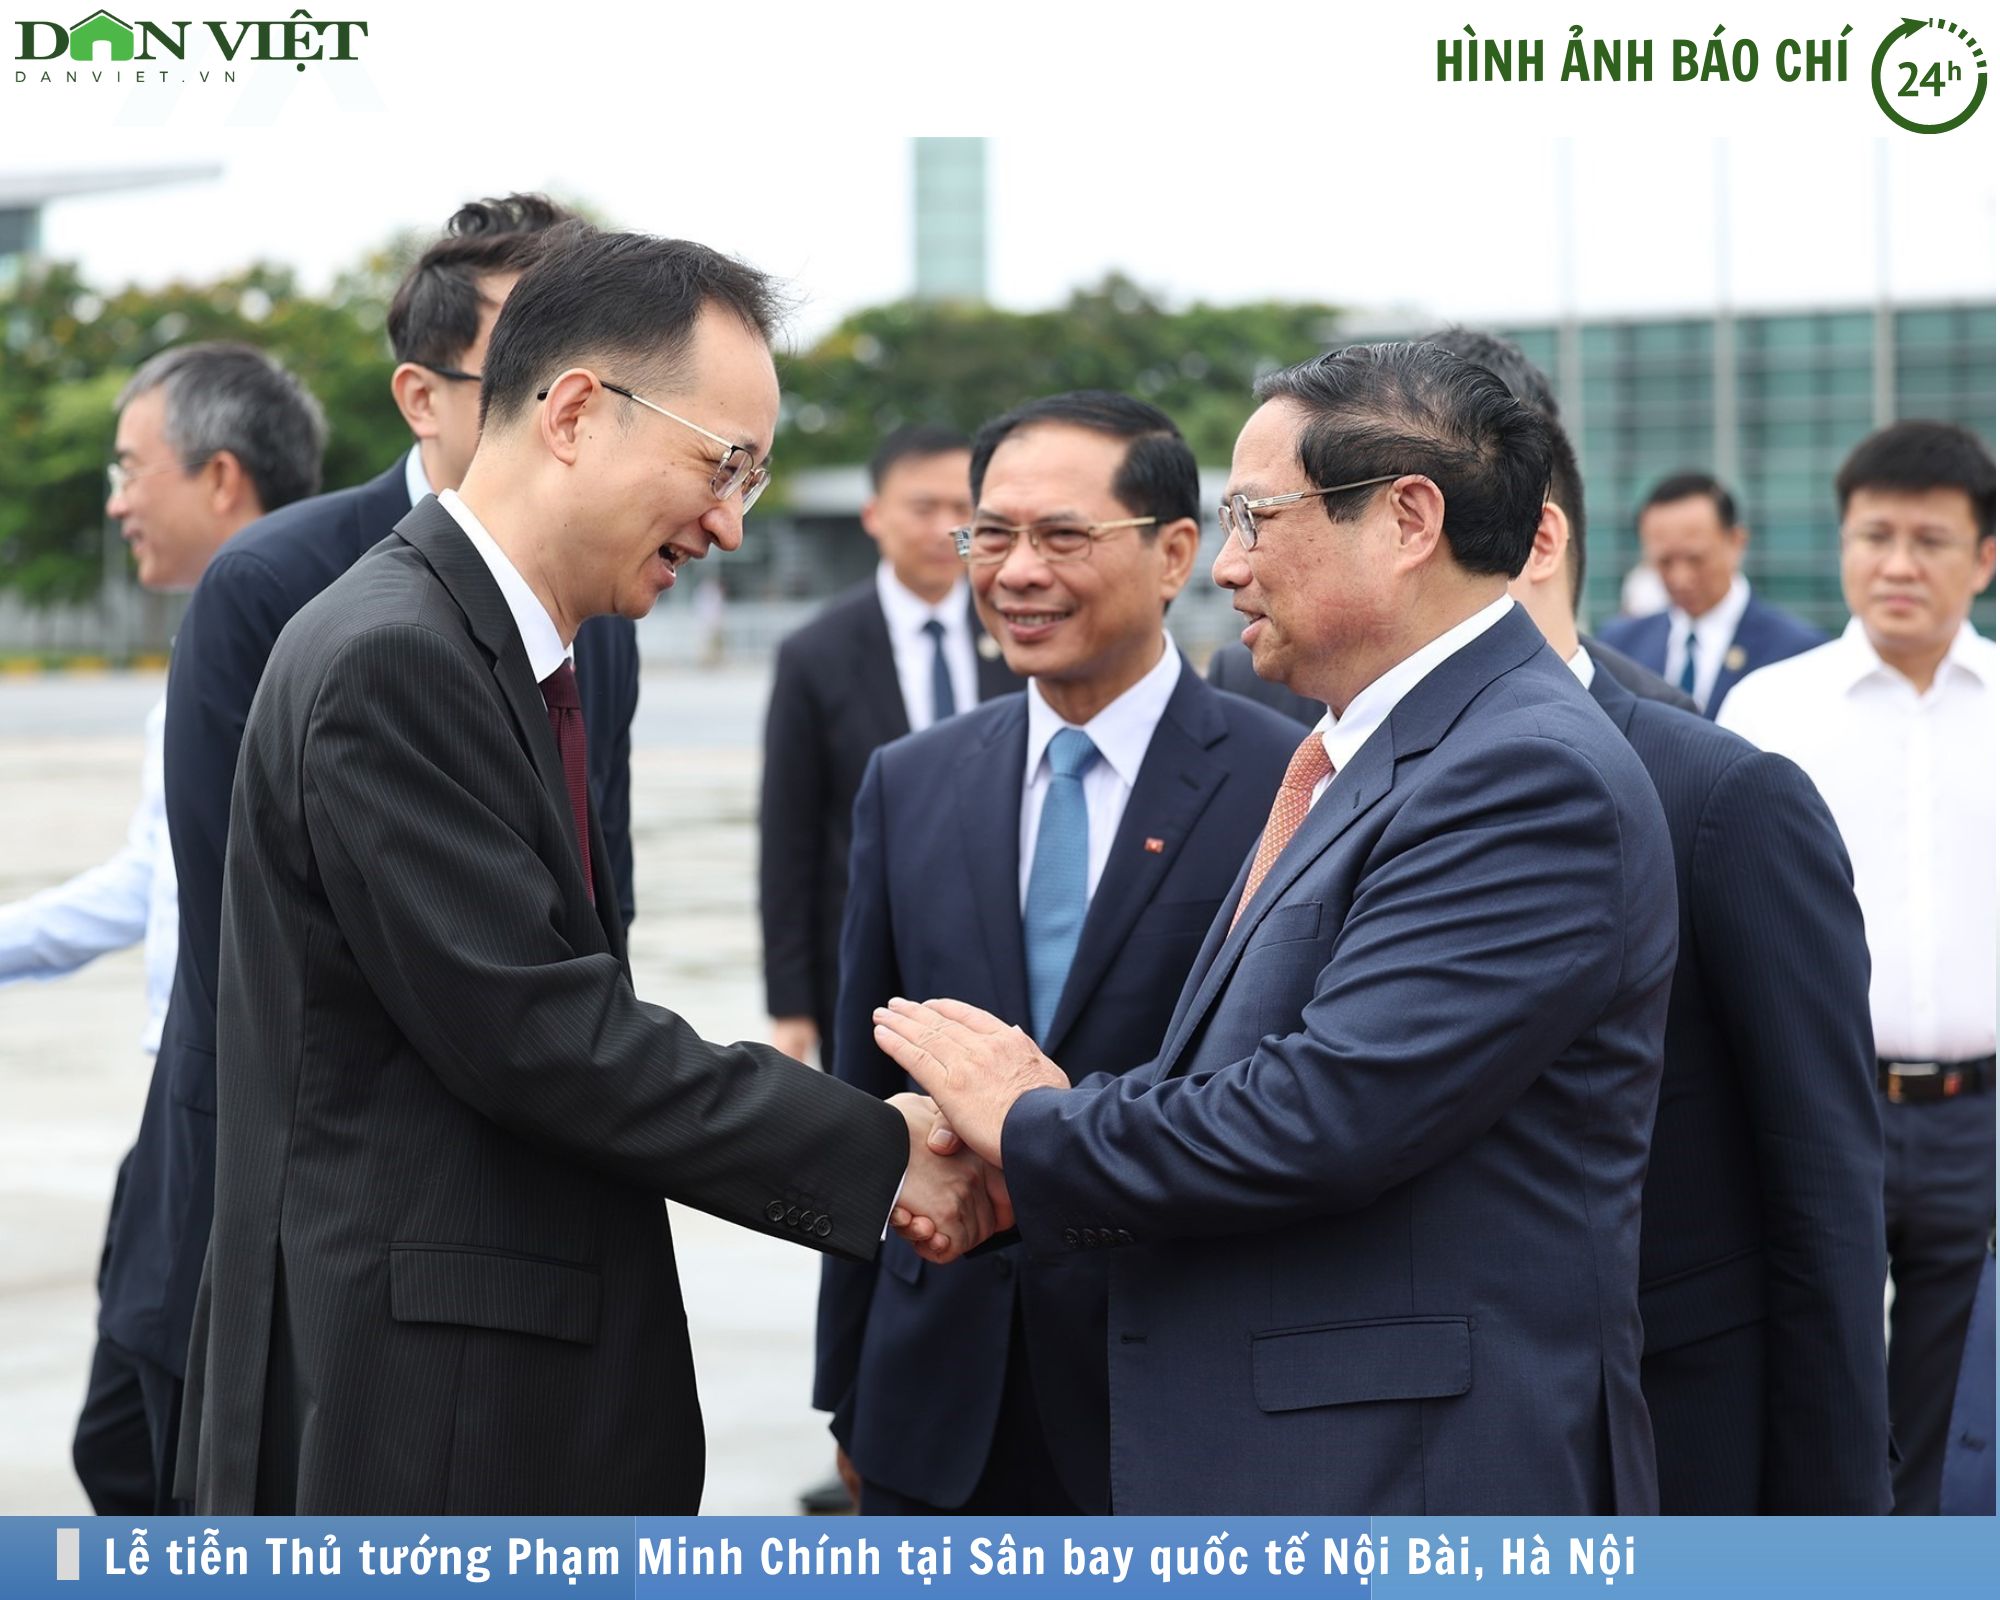 Hình ảnh báo chí 24h: Lễ tiễn Thủ tướng Phạm Minh Chính lên đường dự WEF Đại Liên và làm việc tại Trung Quốc- Ảnh 1.